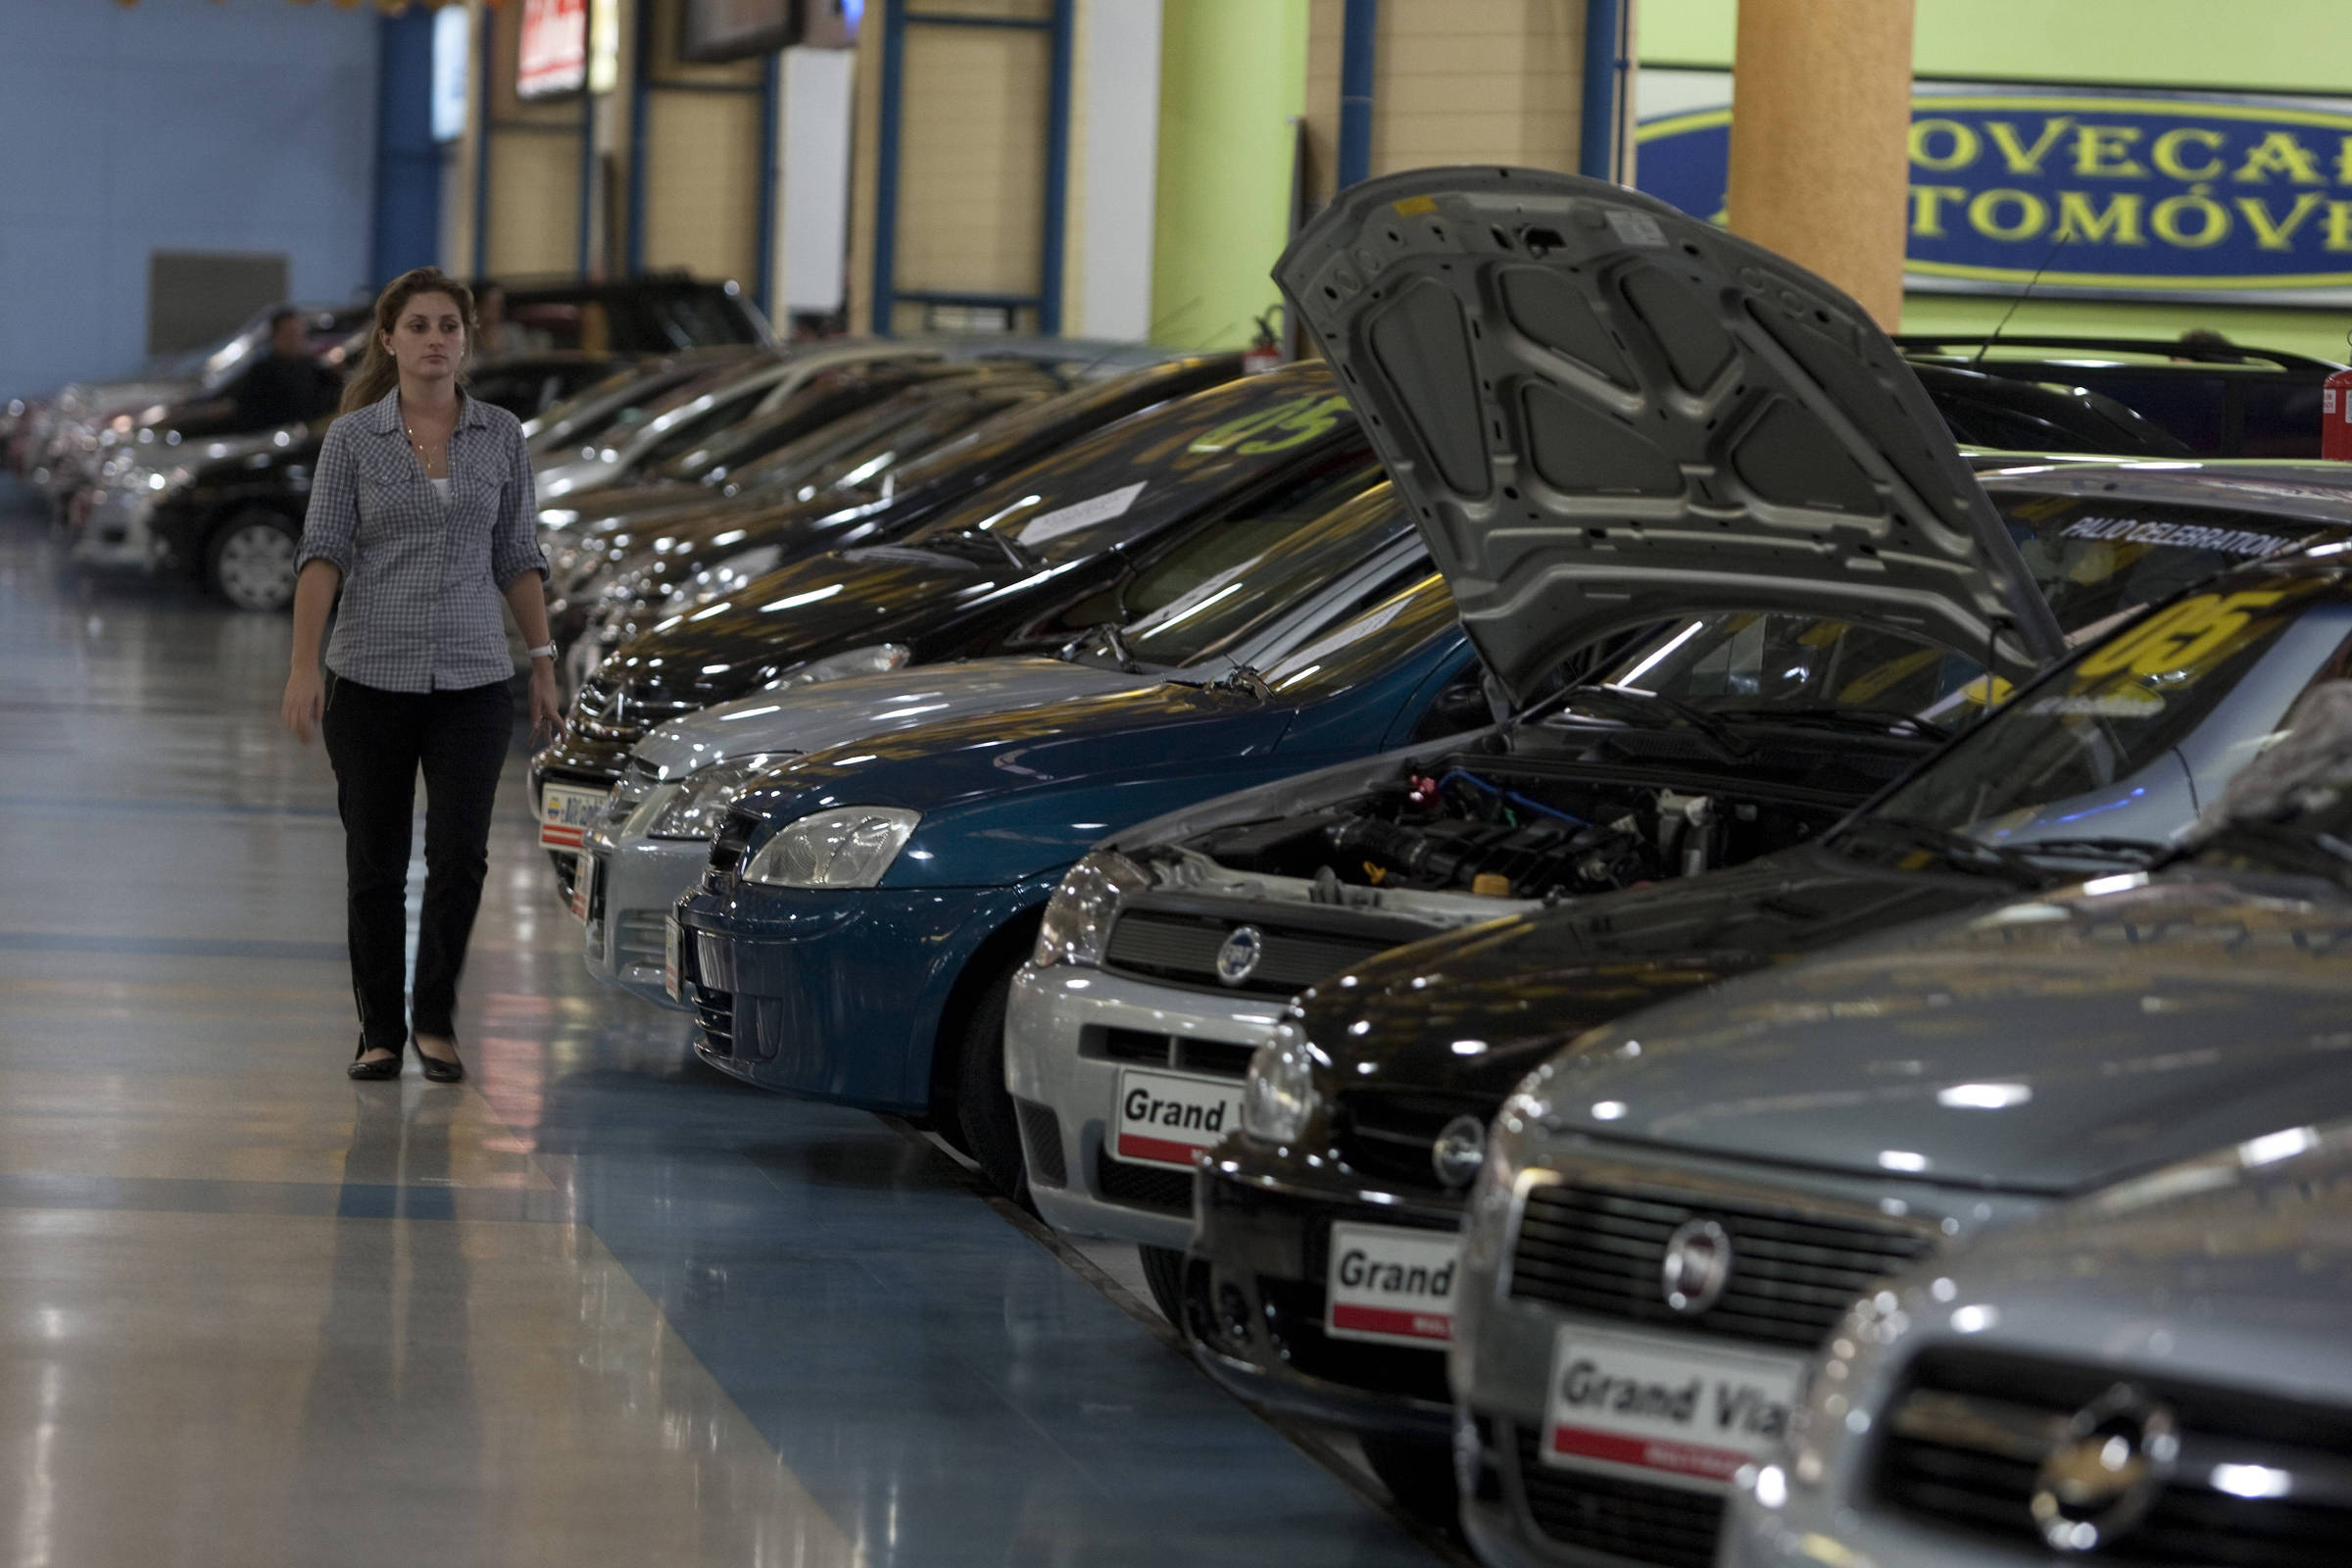 Embrapii abre nova rodada de investimentos no setor automotivo